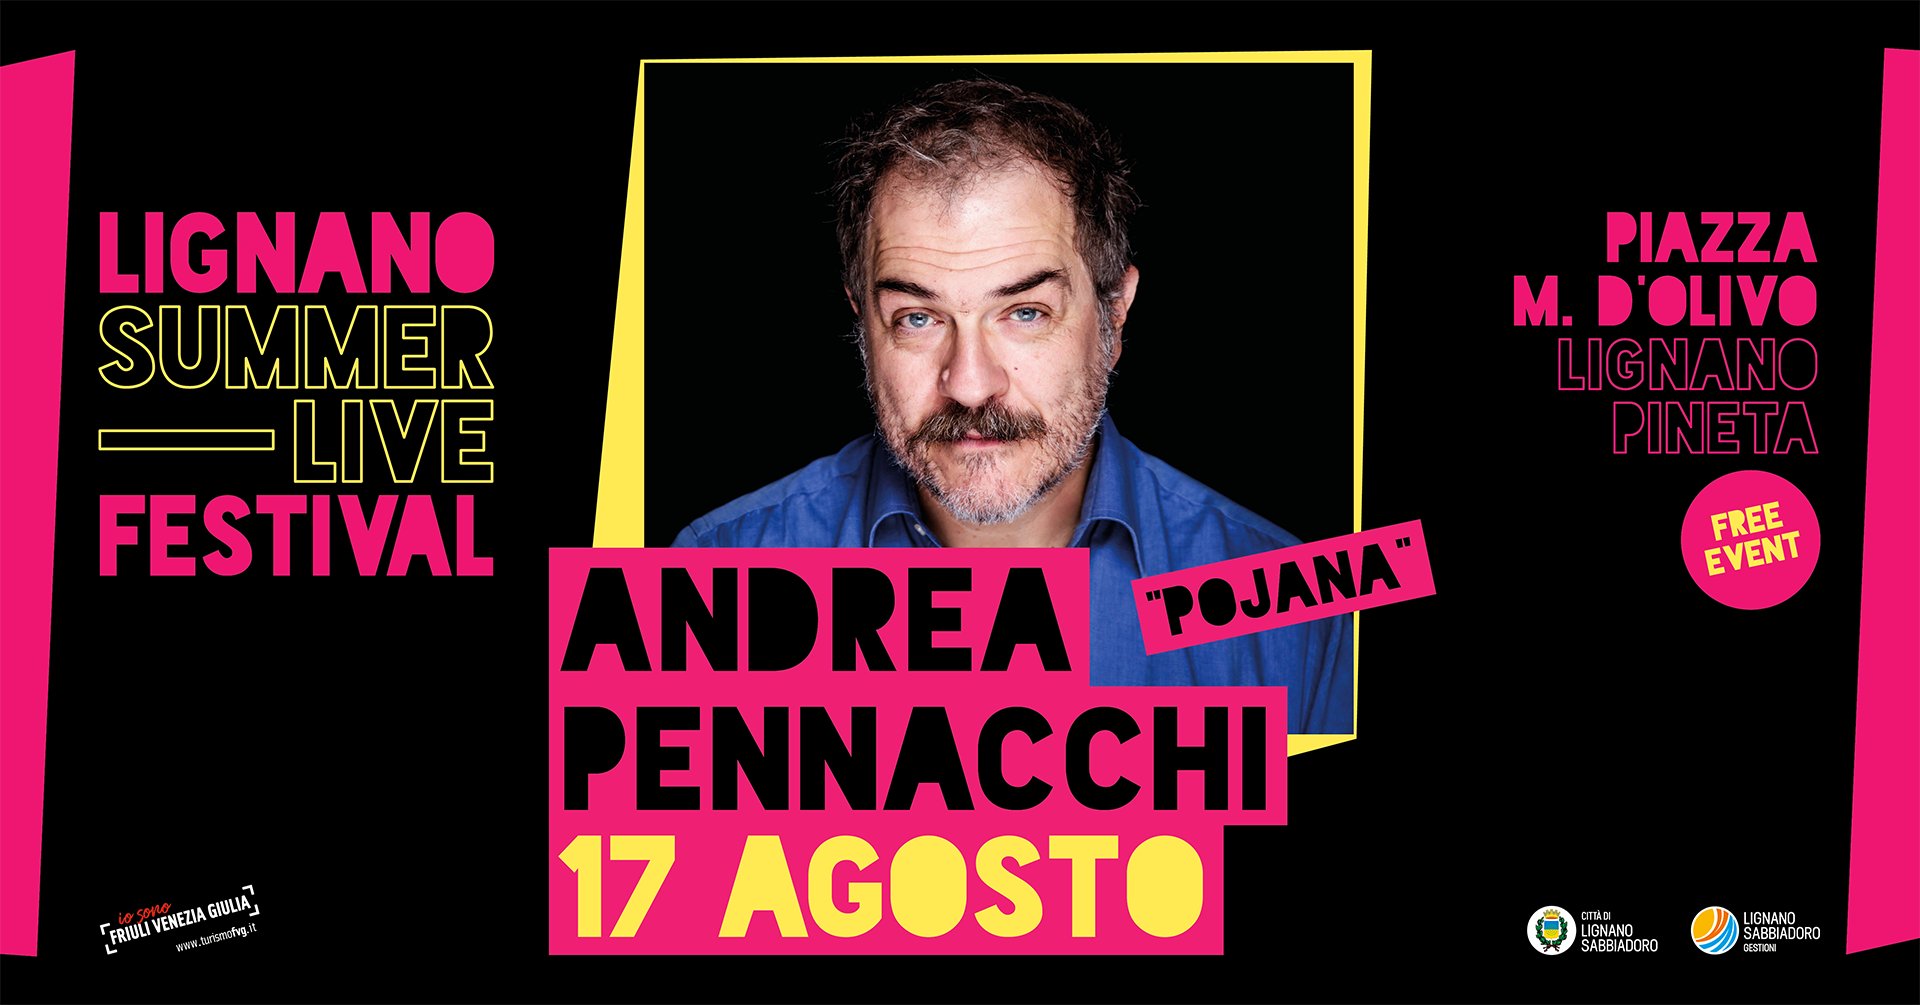 Andrea Pennacchi, detto Pojana, Summer Live Festival